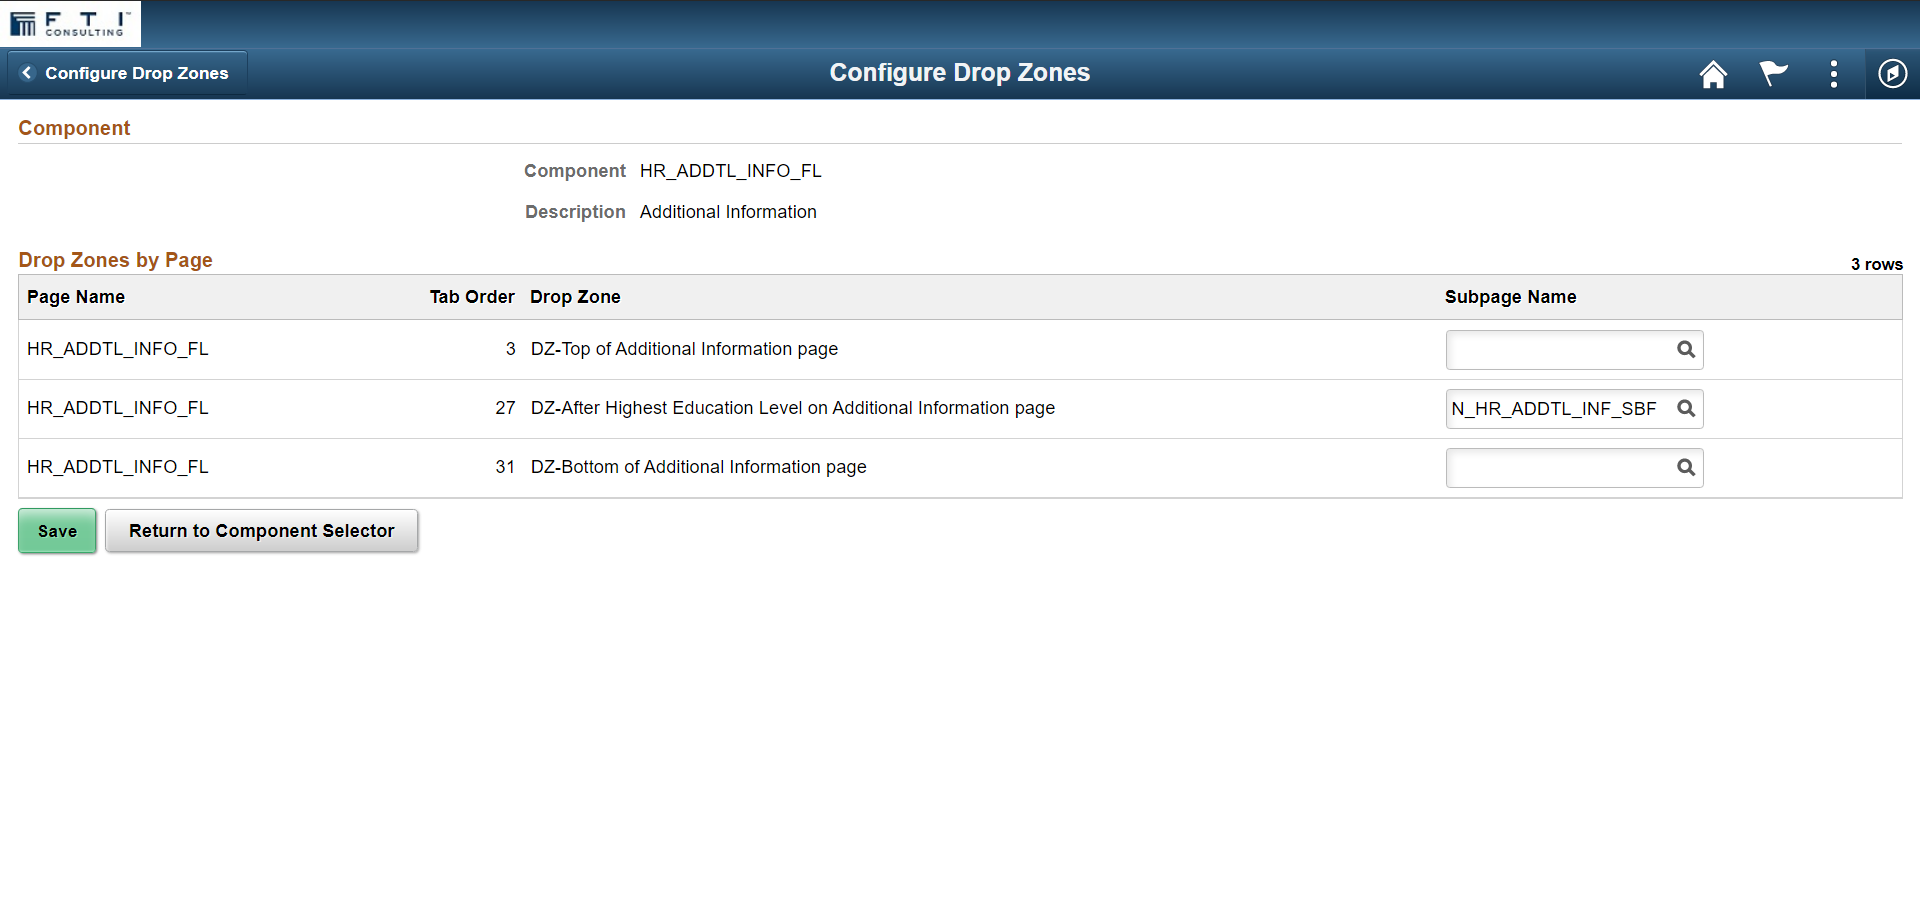 Configure Drop Zones page